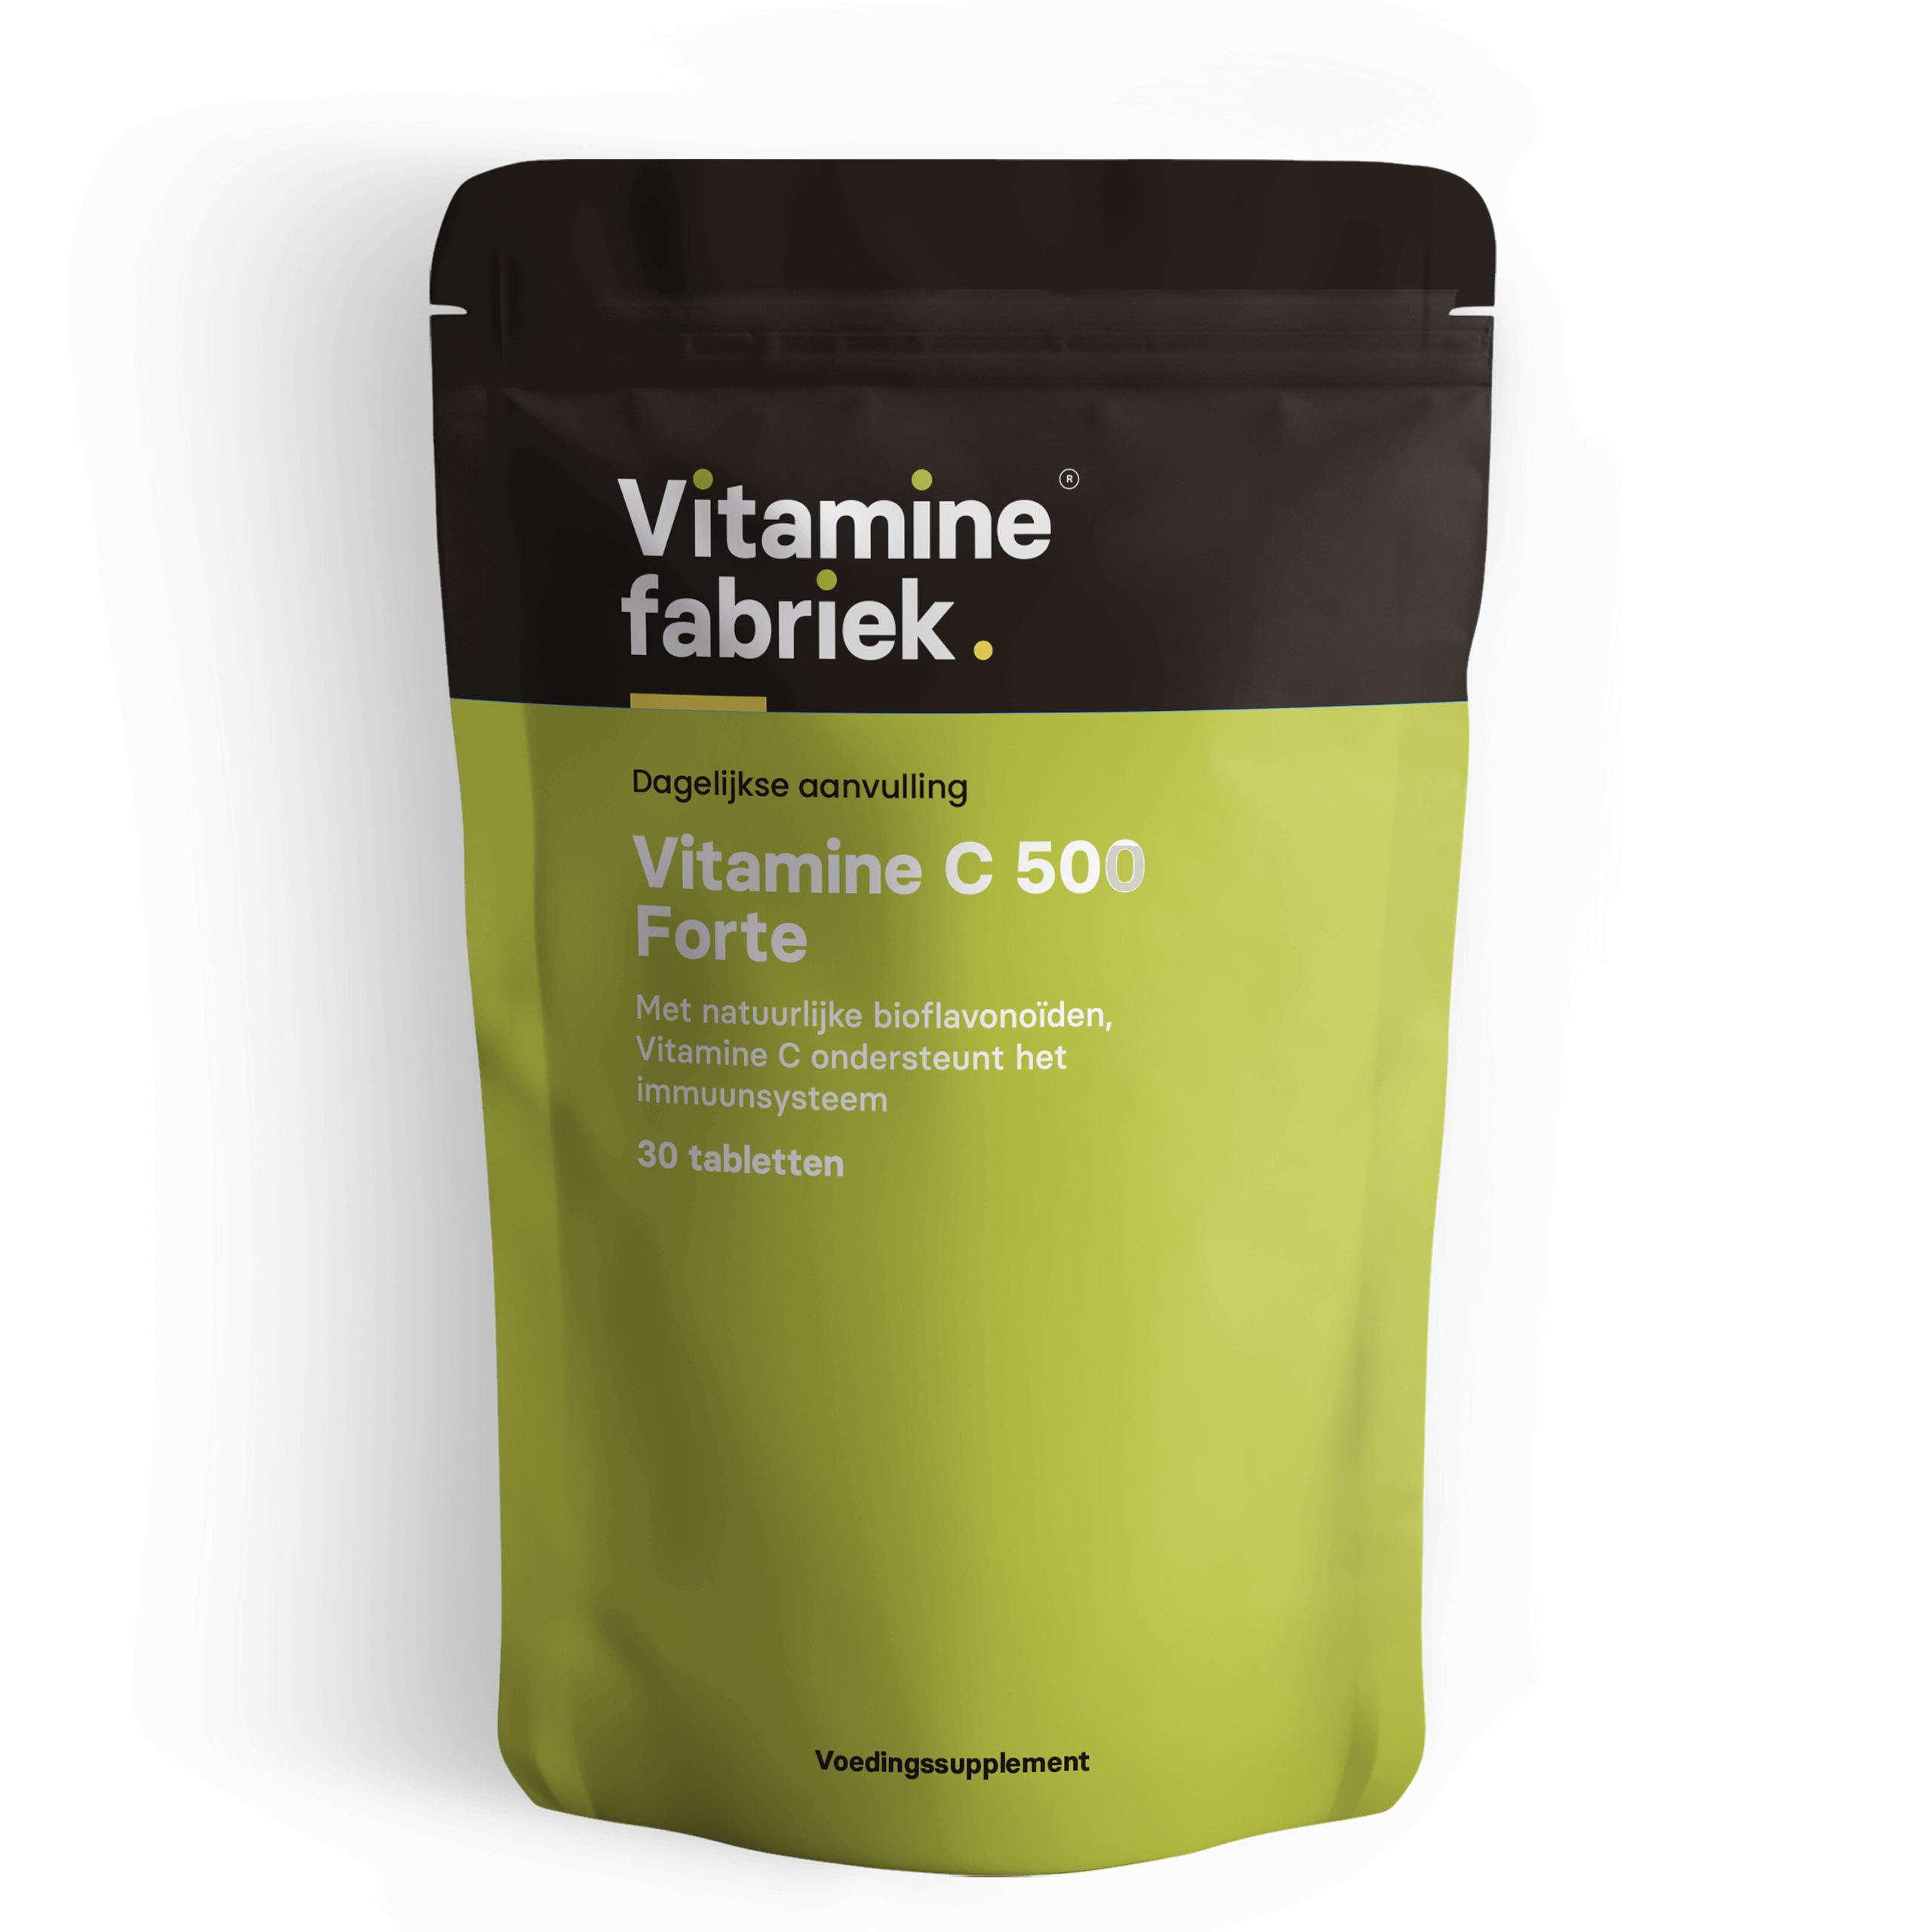 Vitamine C - 500 Forte - 30 tabletten - Vitaminefabriek.nl